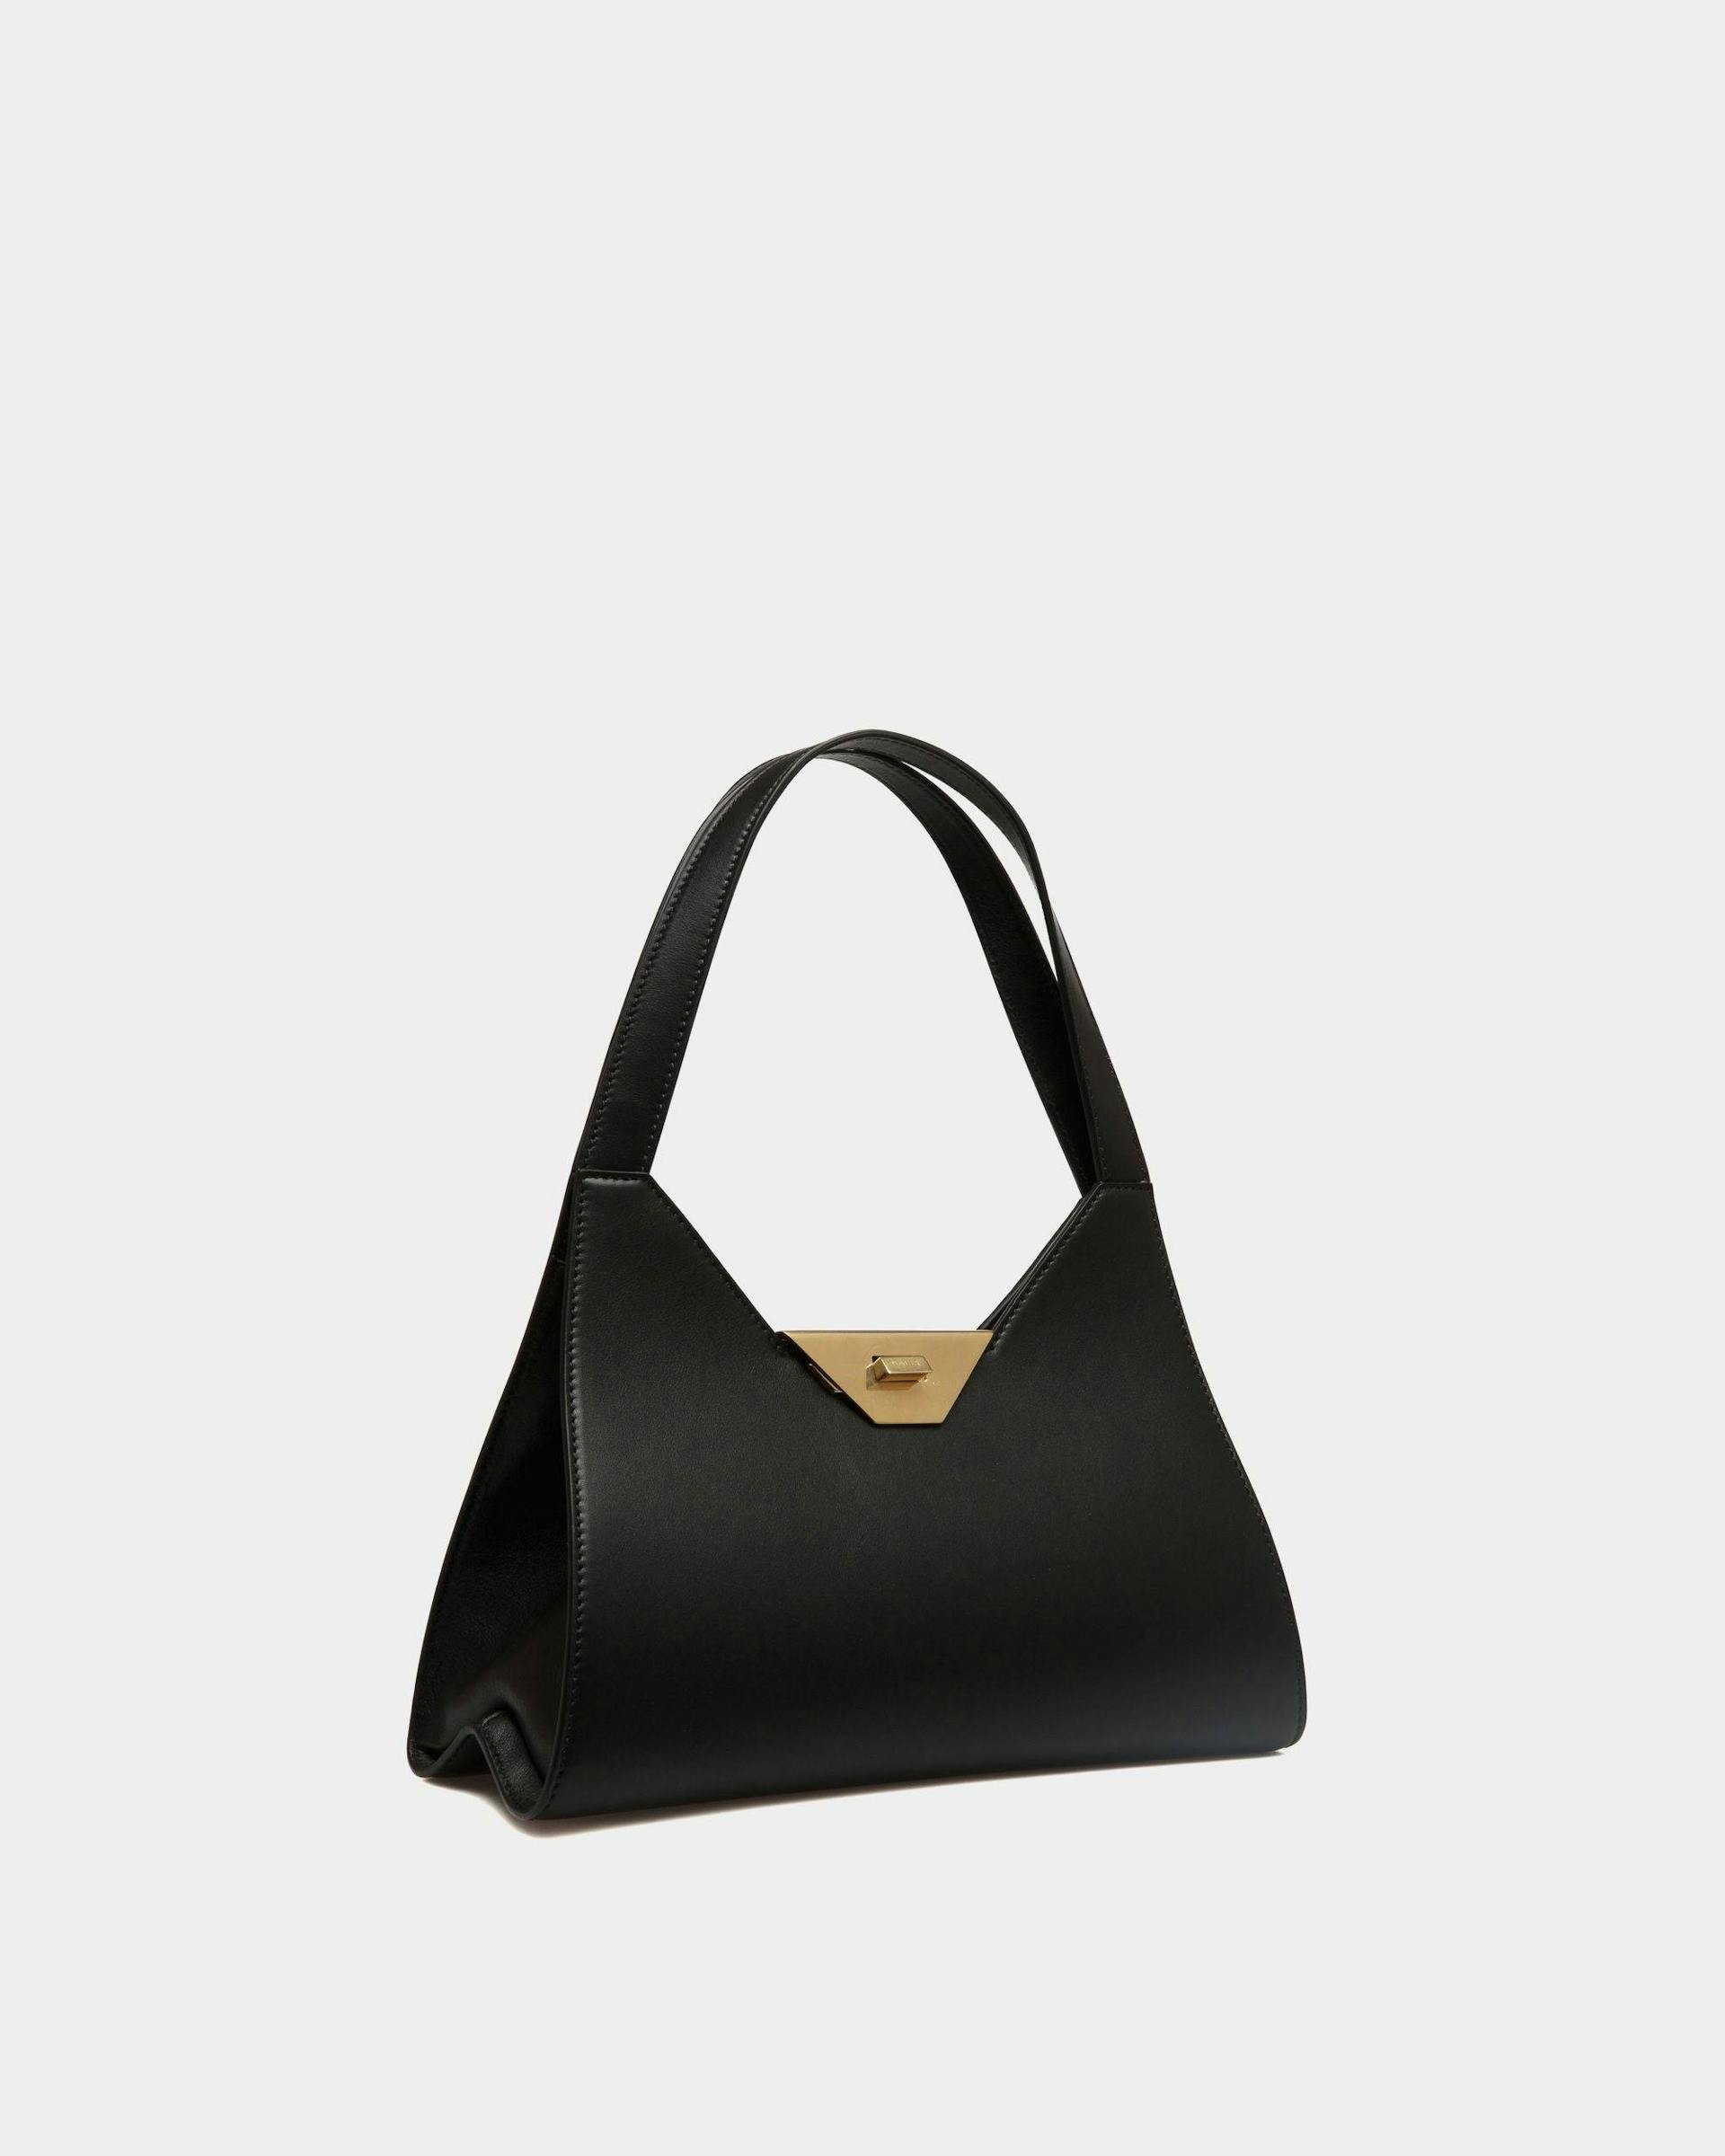 Women's Tilt Shoulder Bag in Black Leather | Bally | Still Life 3/4 Front